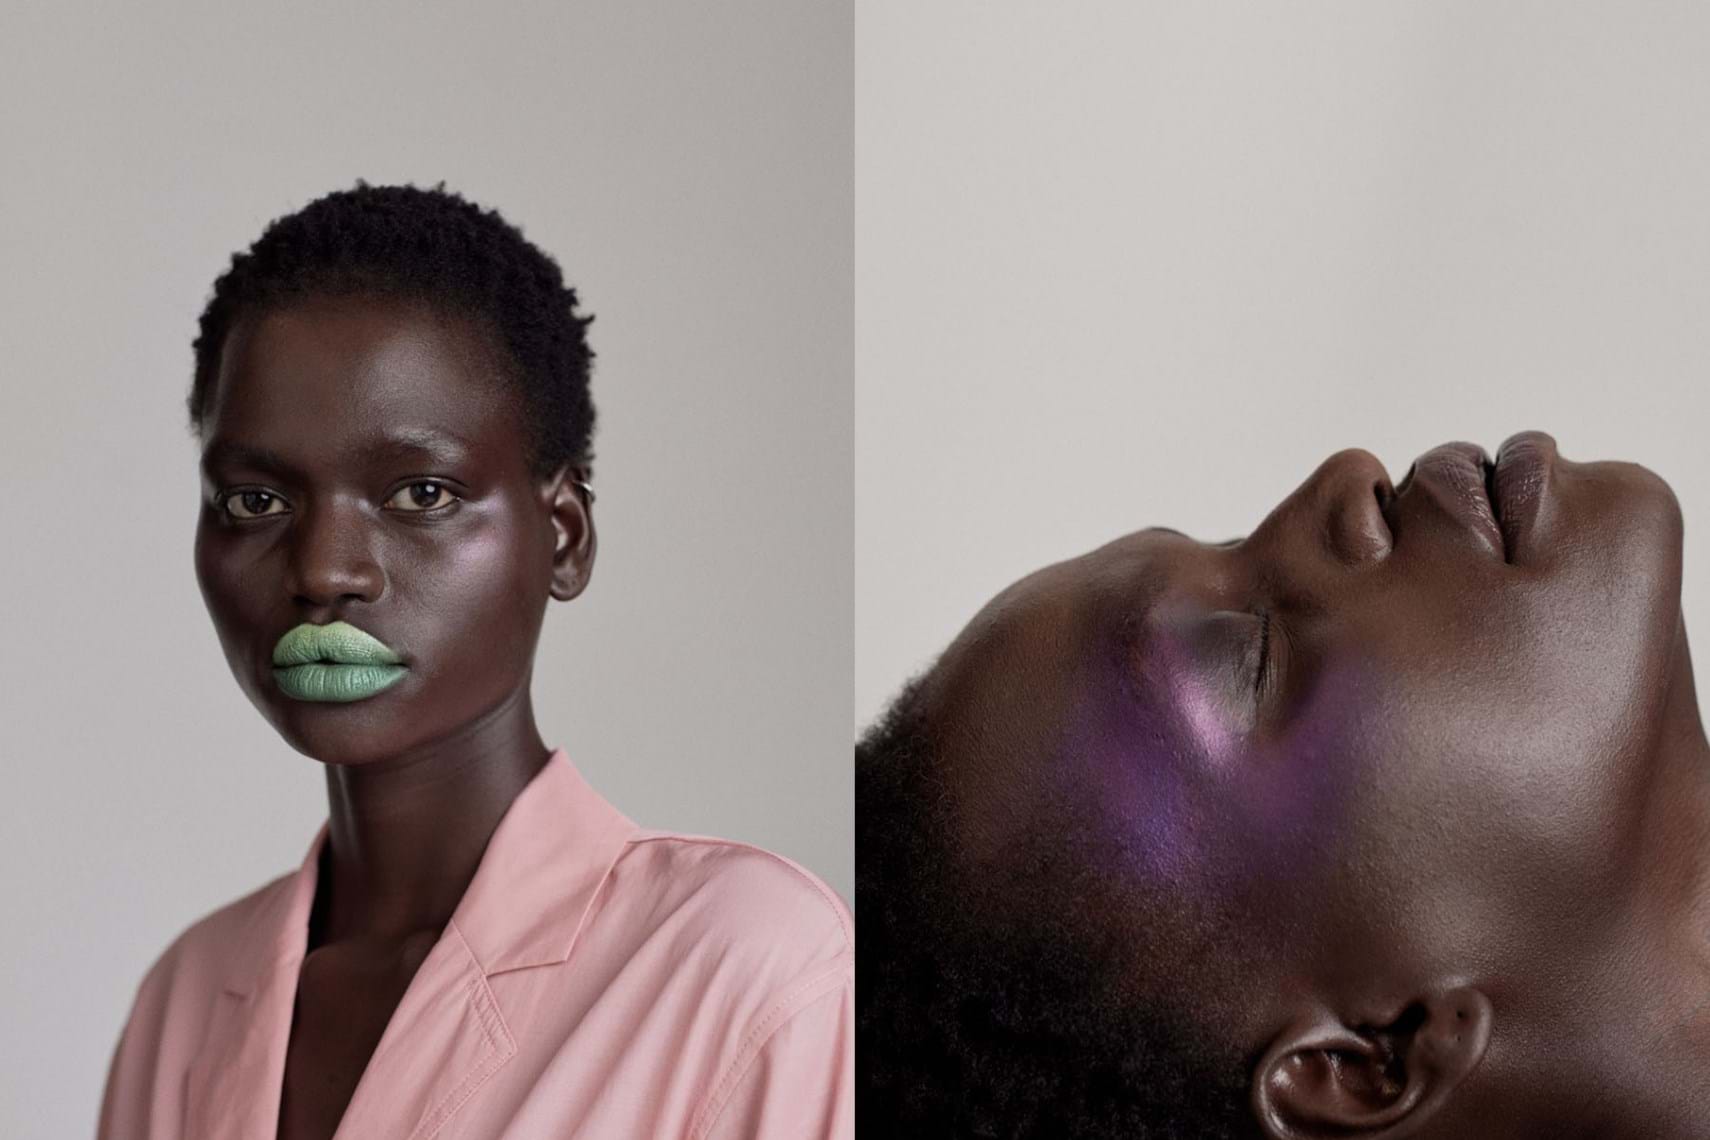 Die besten Tipps zur Bearbeitung von Hauttönen von professionellen Fotografen